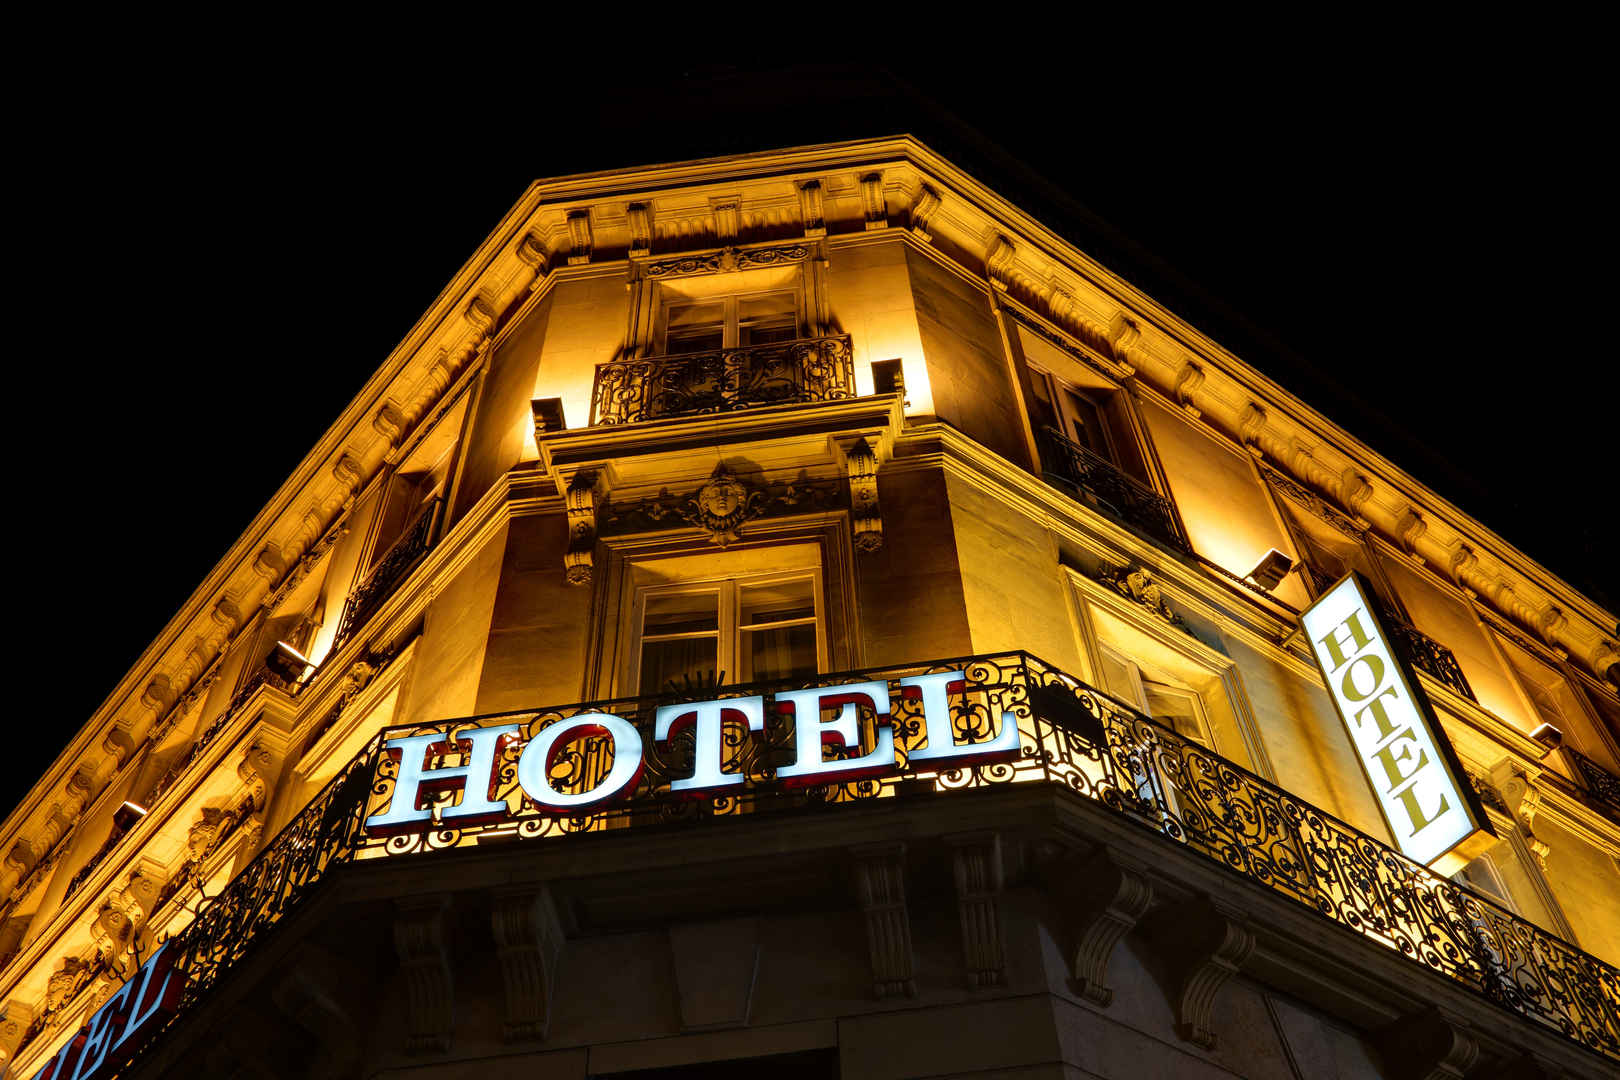 晚上HOTEL的酒店暗黄色照明标志-